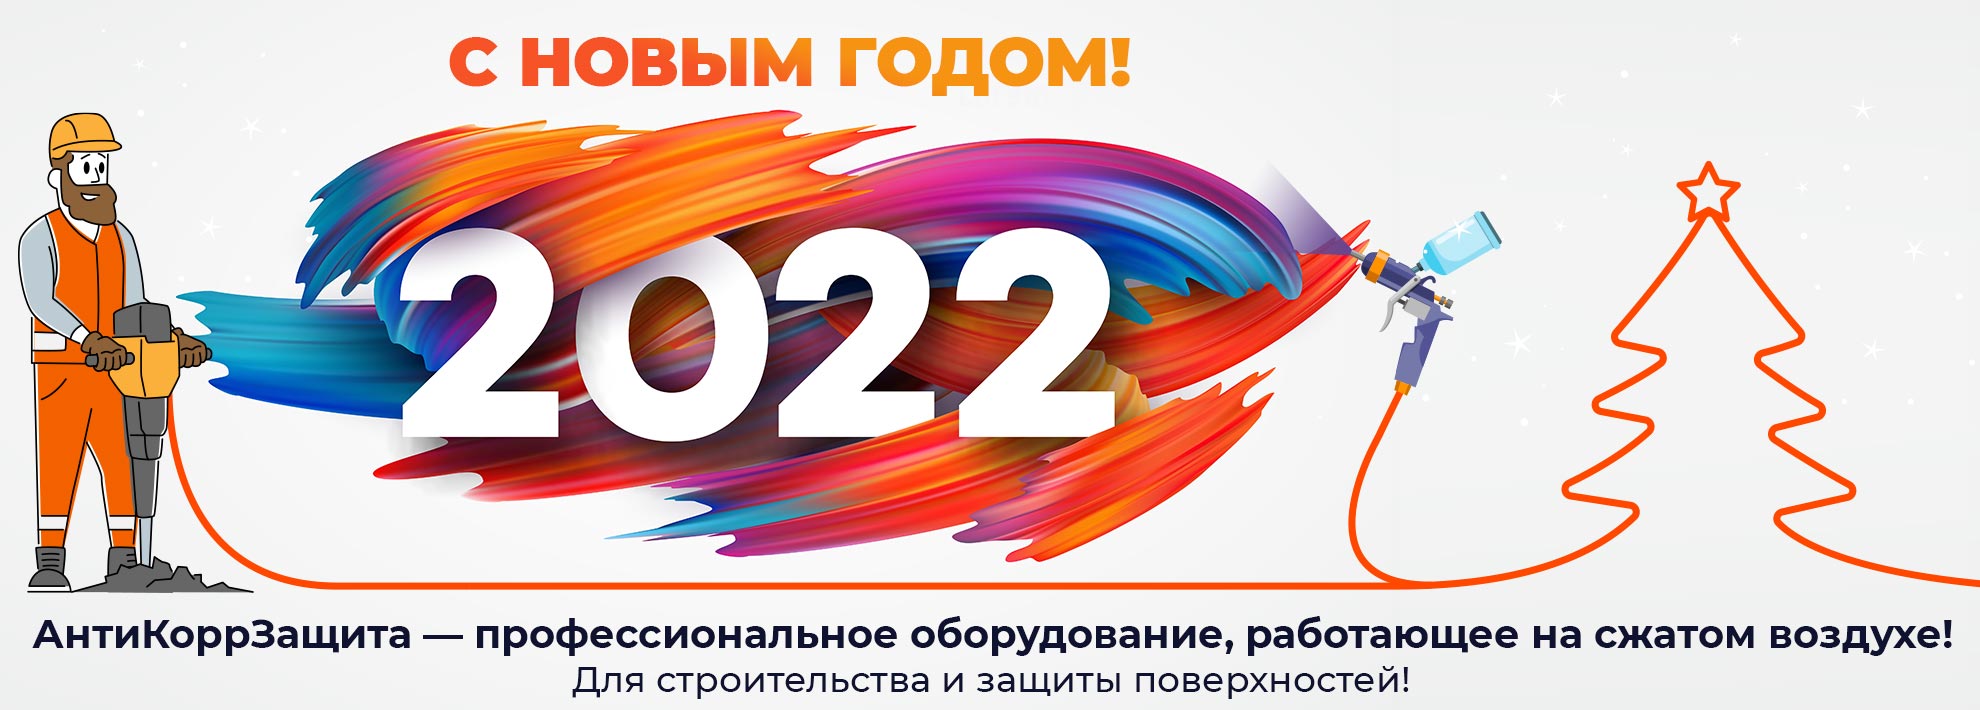 Поздравление с Новым Годом 2022!